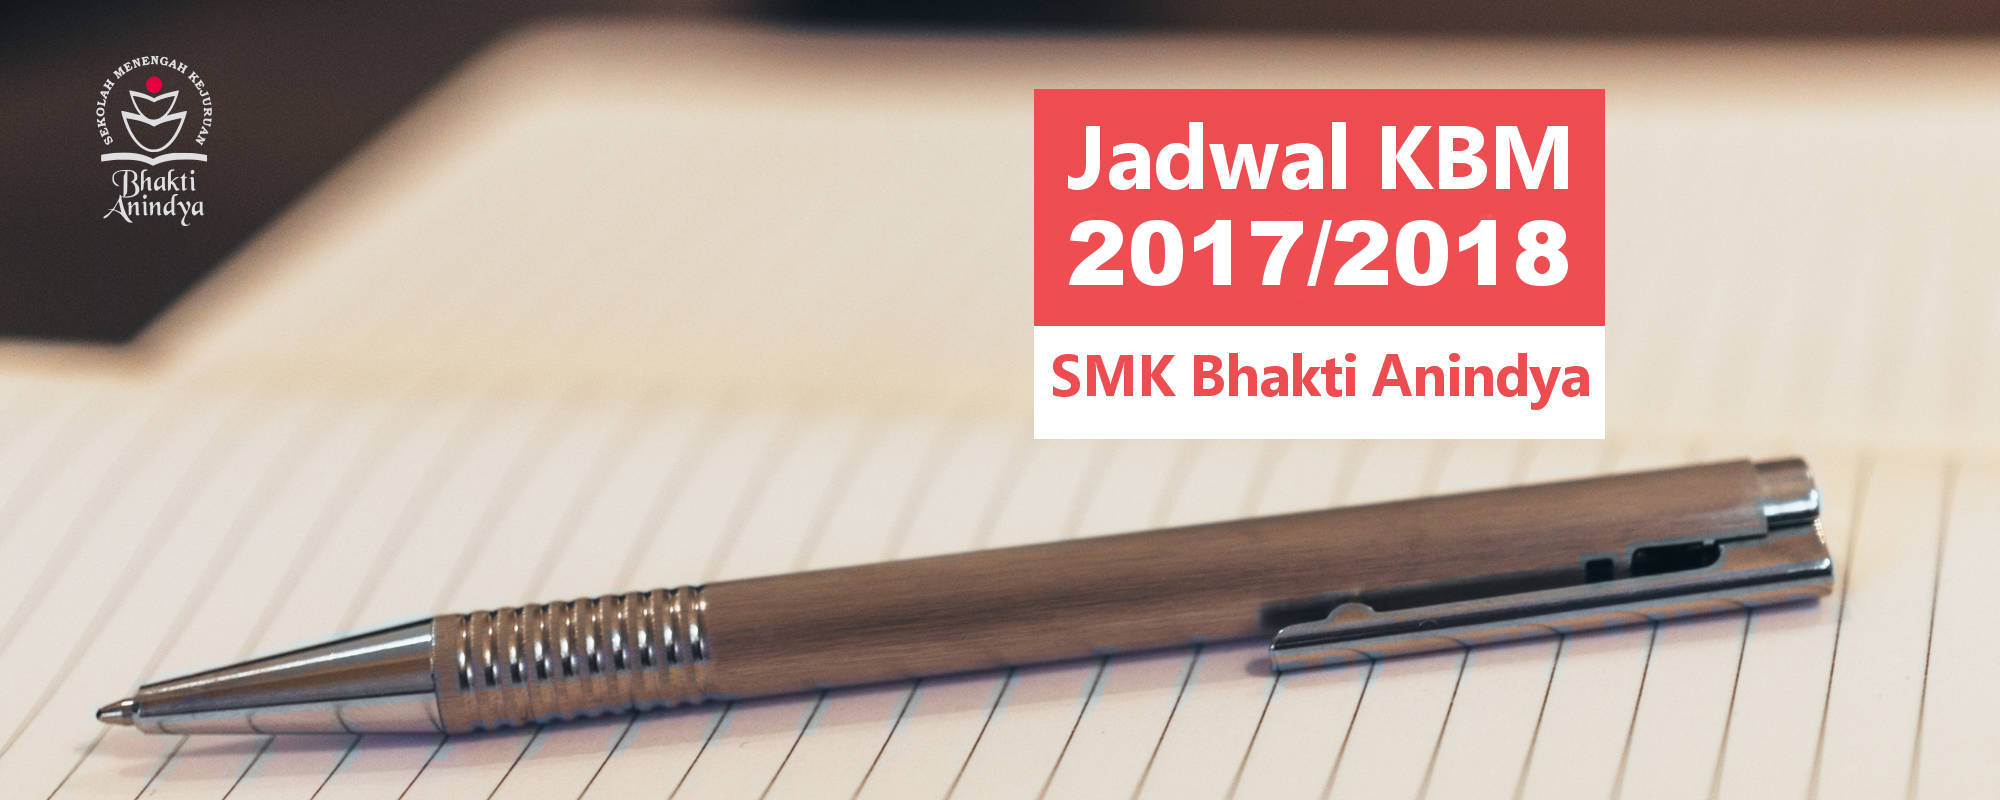 Jadwal KBM 2017/2018 SMK Bhakti Anindya Tangerang